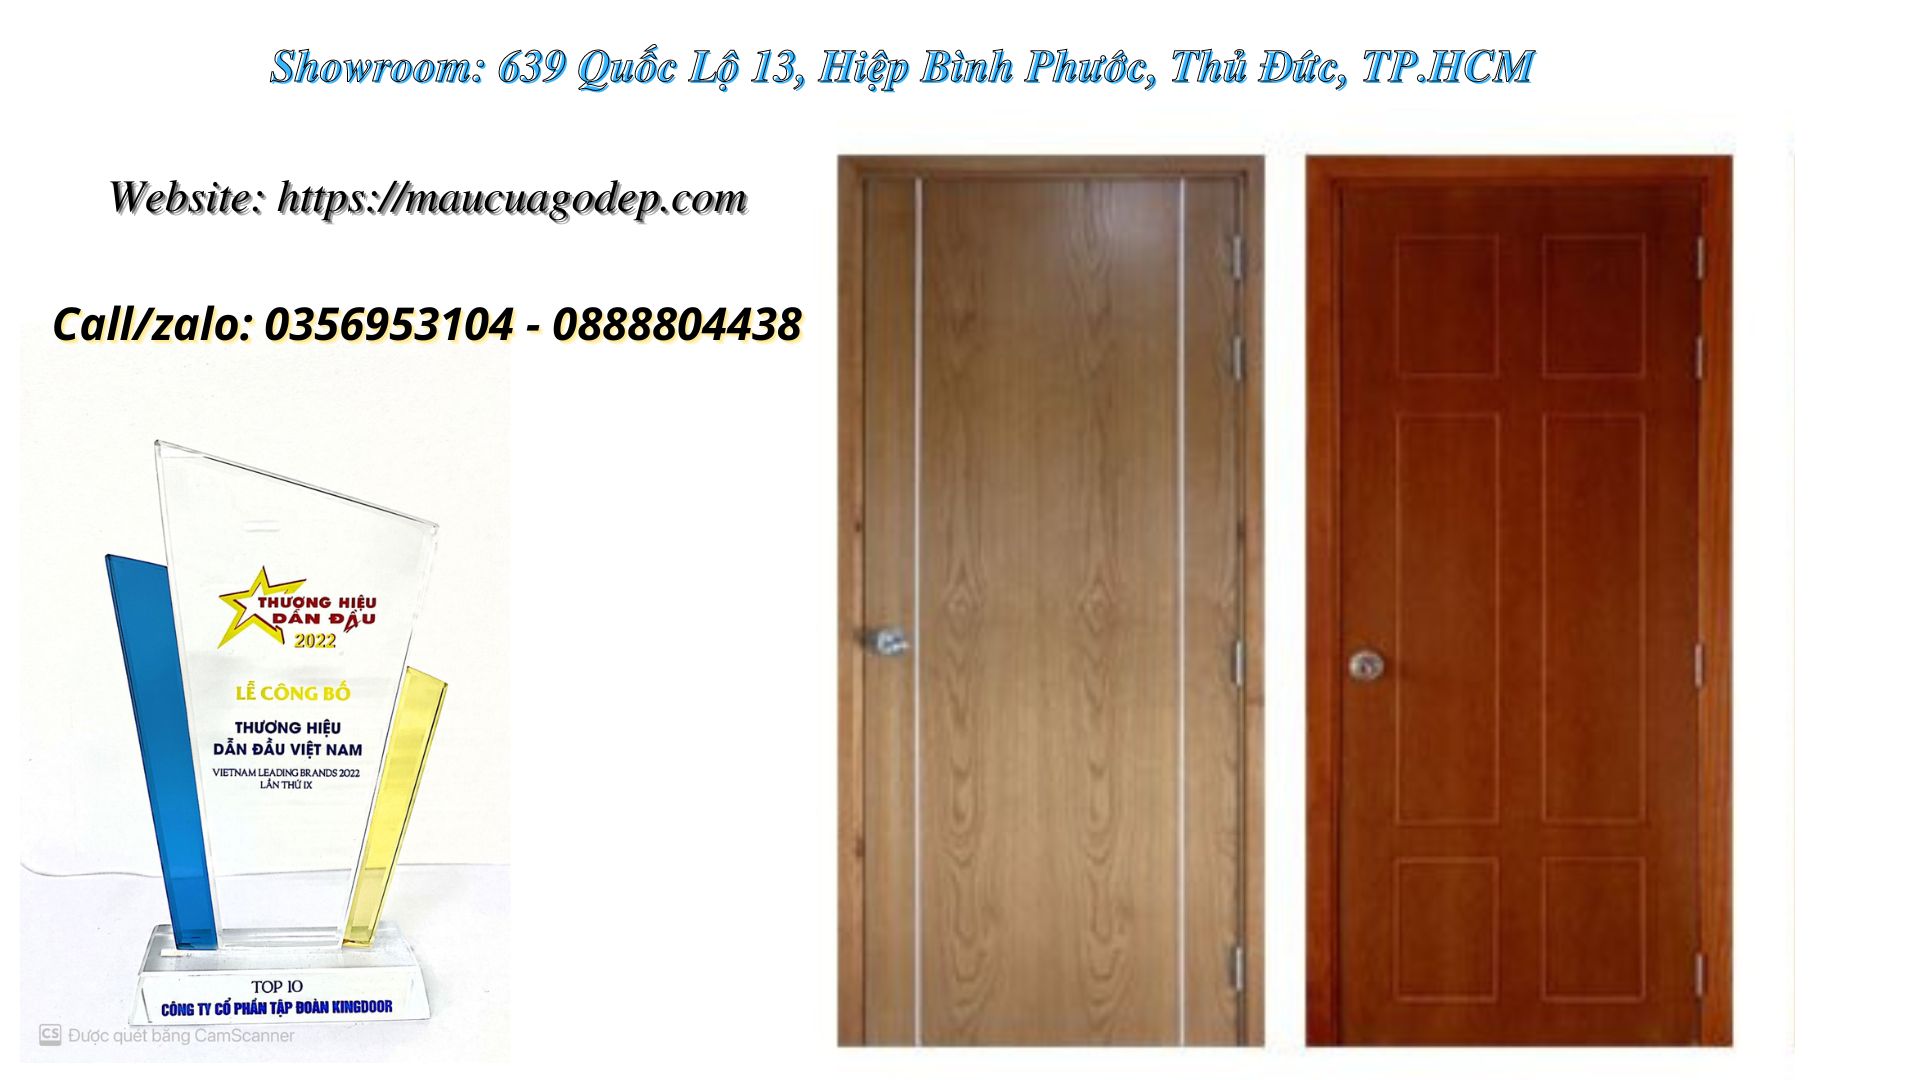 Nội, ngoại thất: Cửa gỗ MDF Veneer giá rẻ. Cửa gỗ công nghiệp giá rẻ 0356953104-0888804438-1